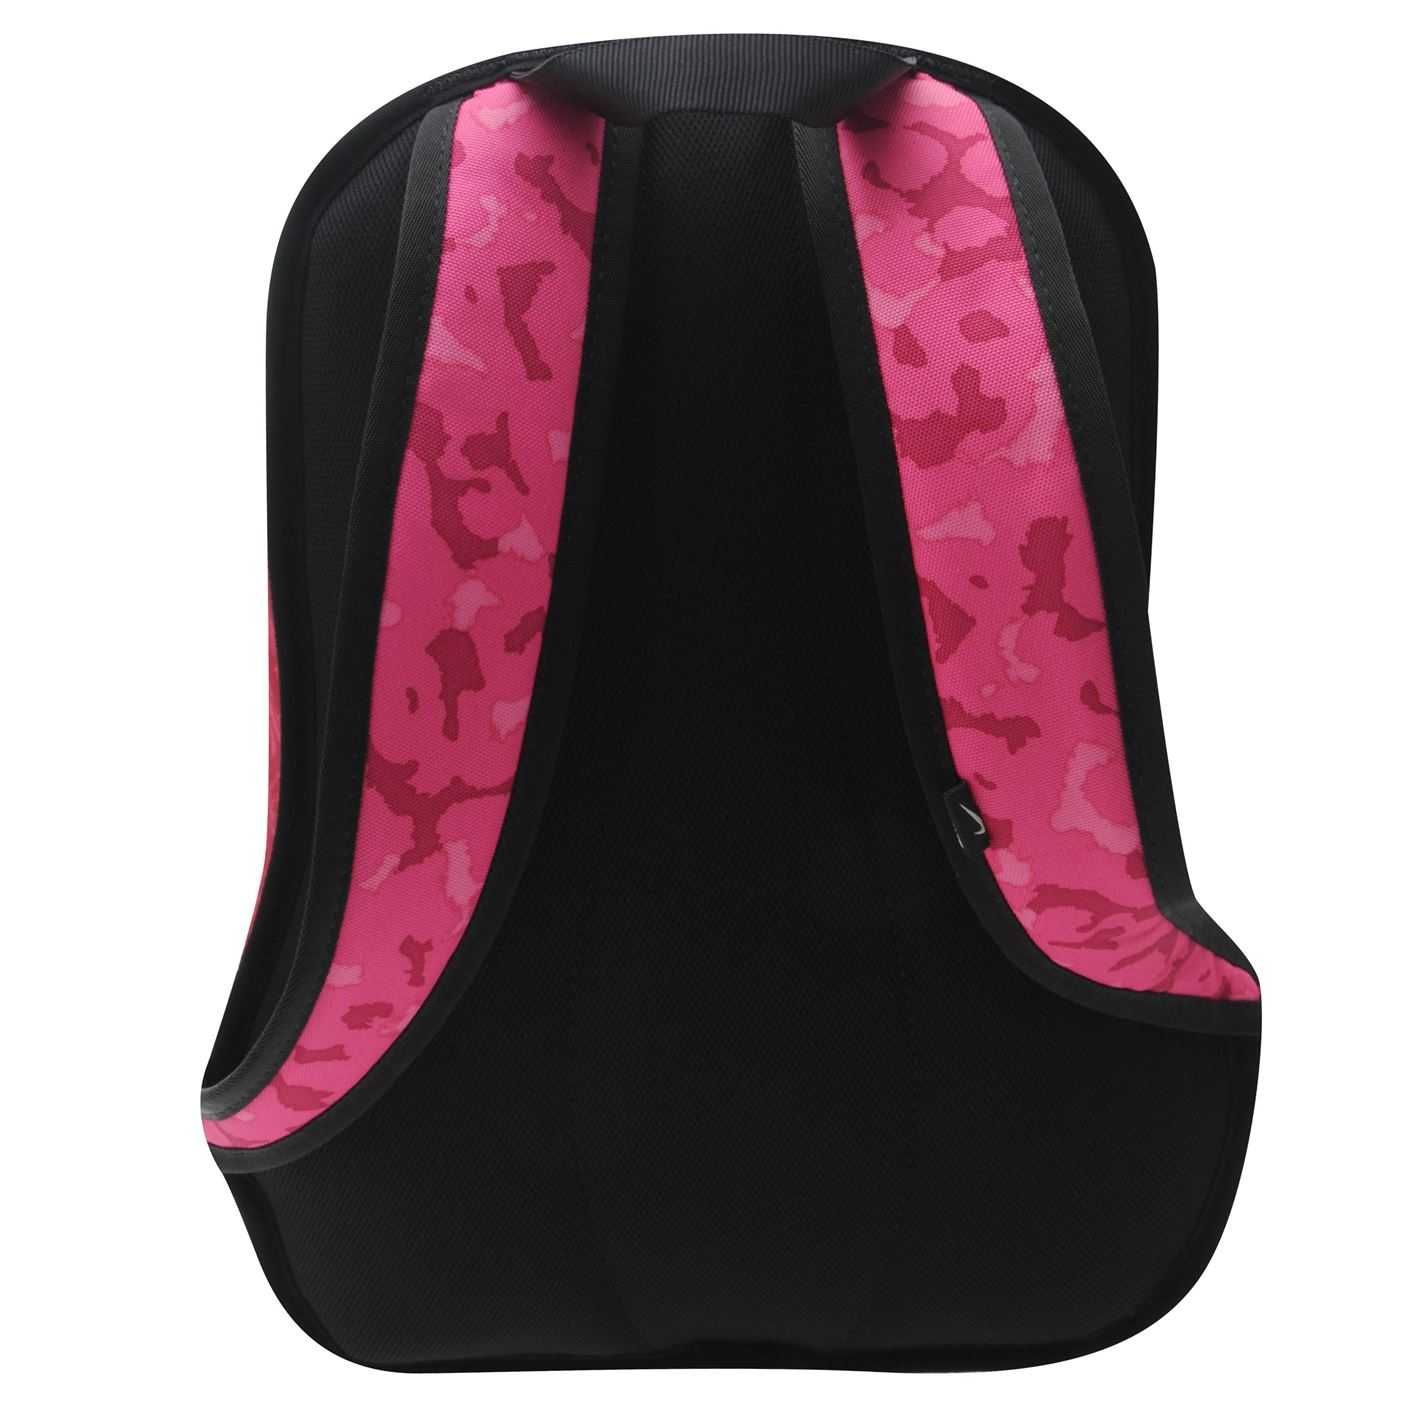 Рюкзак Nike Cheyenne 19L Pink Black Оригинал Розовый городской занятий